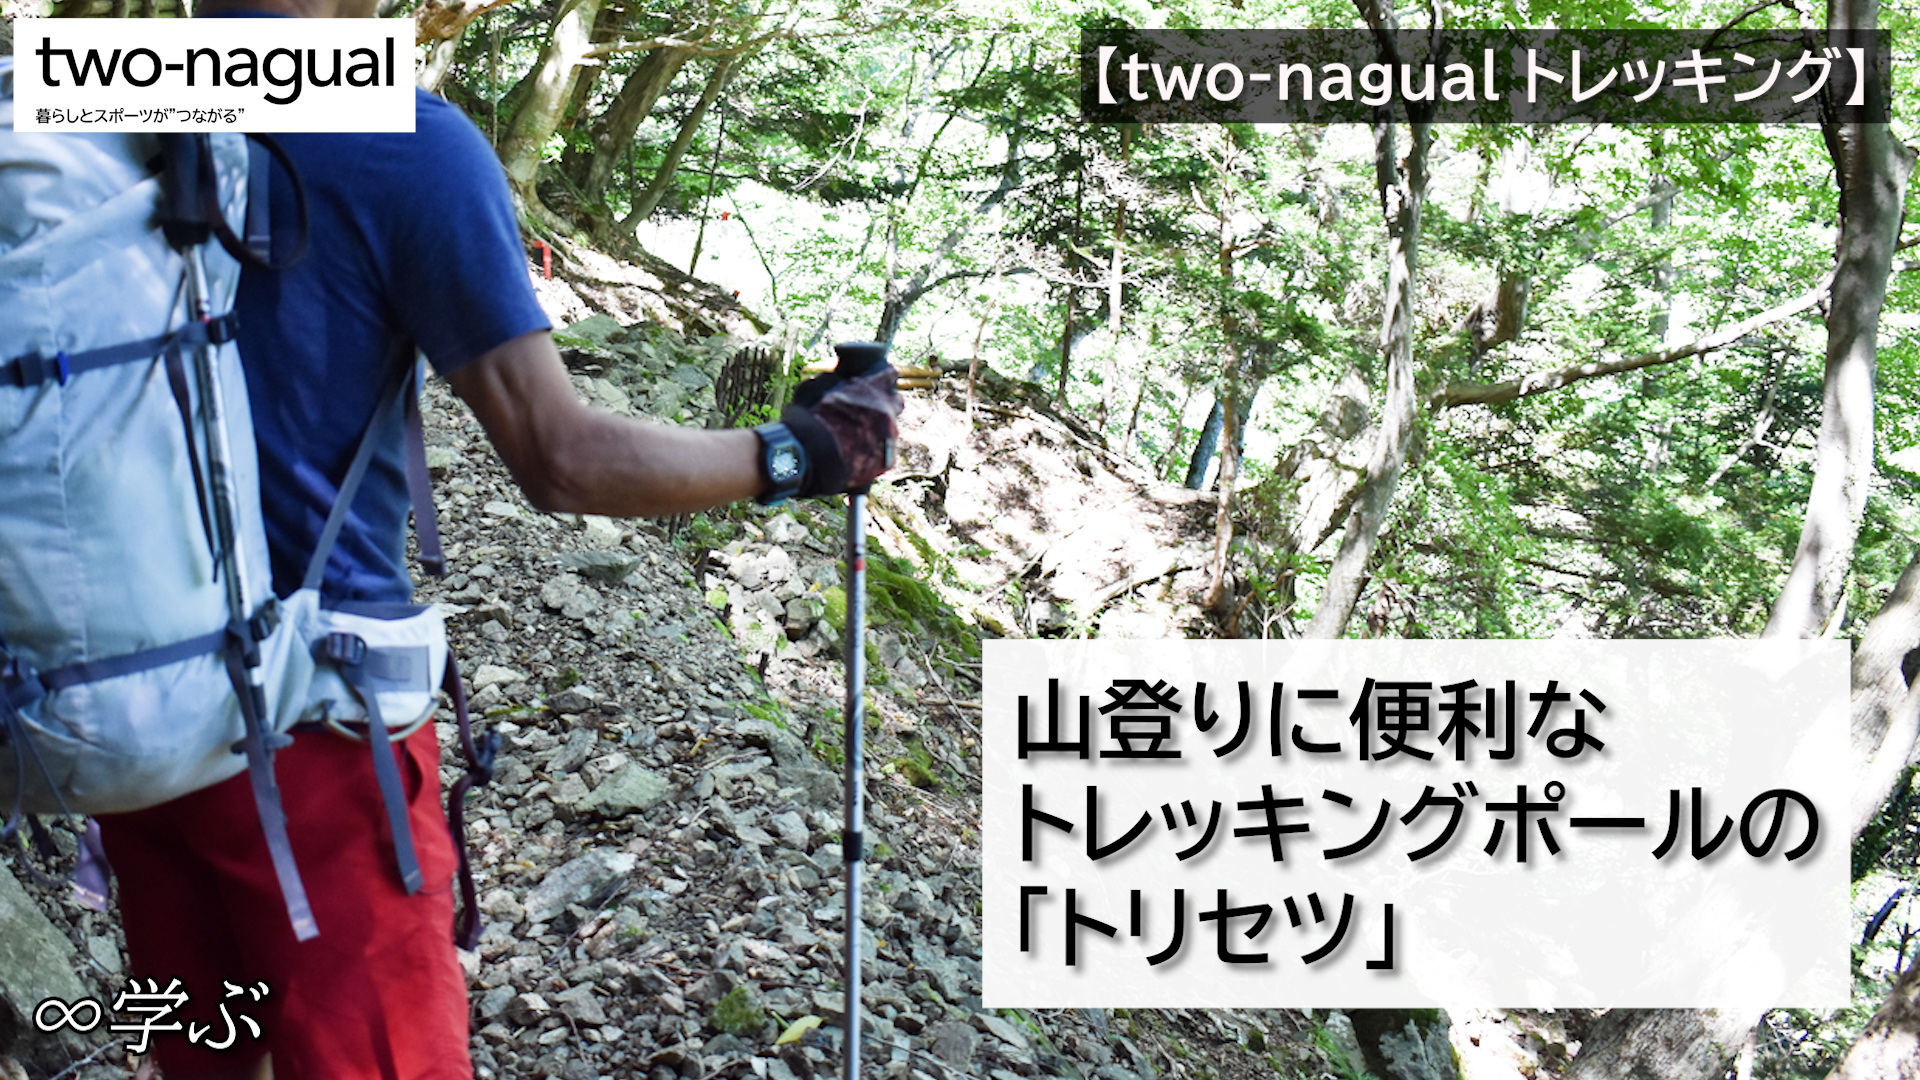 【トレッキング】山登りに便利なトレッキングポールの「トリセツ」